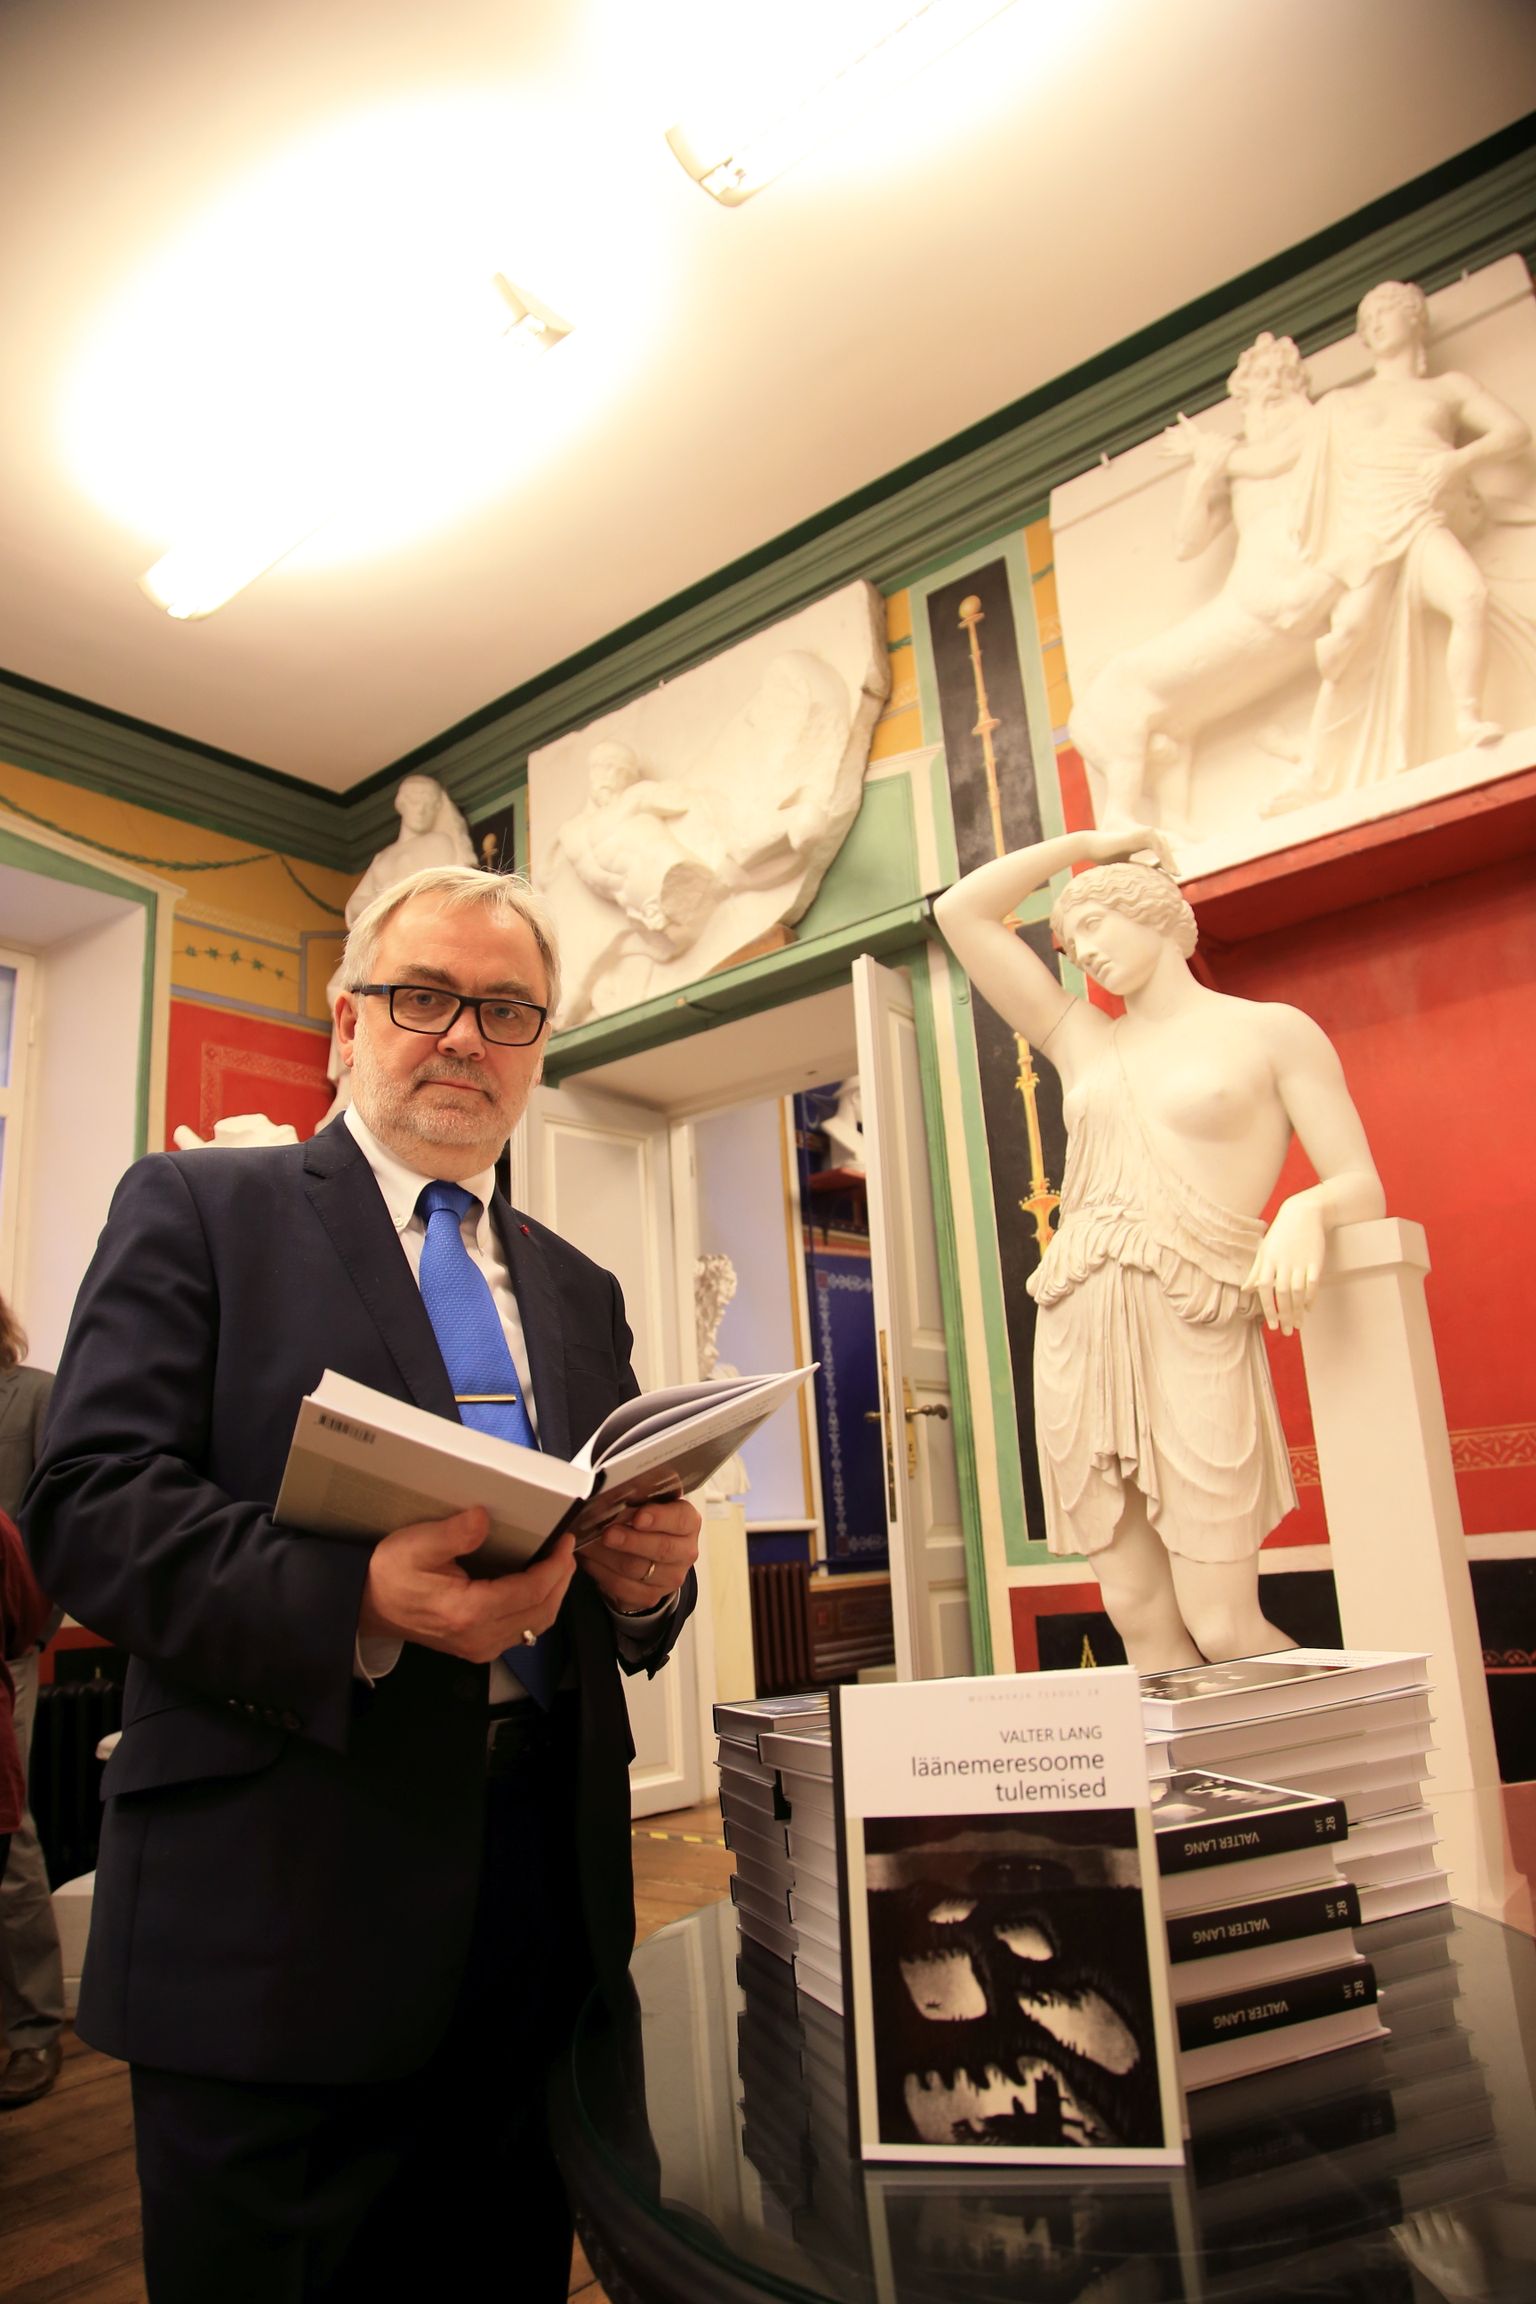 Akadeemik professor Valter Lang esitles 60. sünnipäeval Tartu ülikooli kunsti­­muuseumis raamatut «Läänemeresoome tulemised».